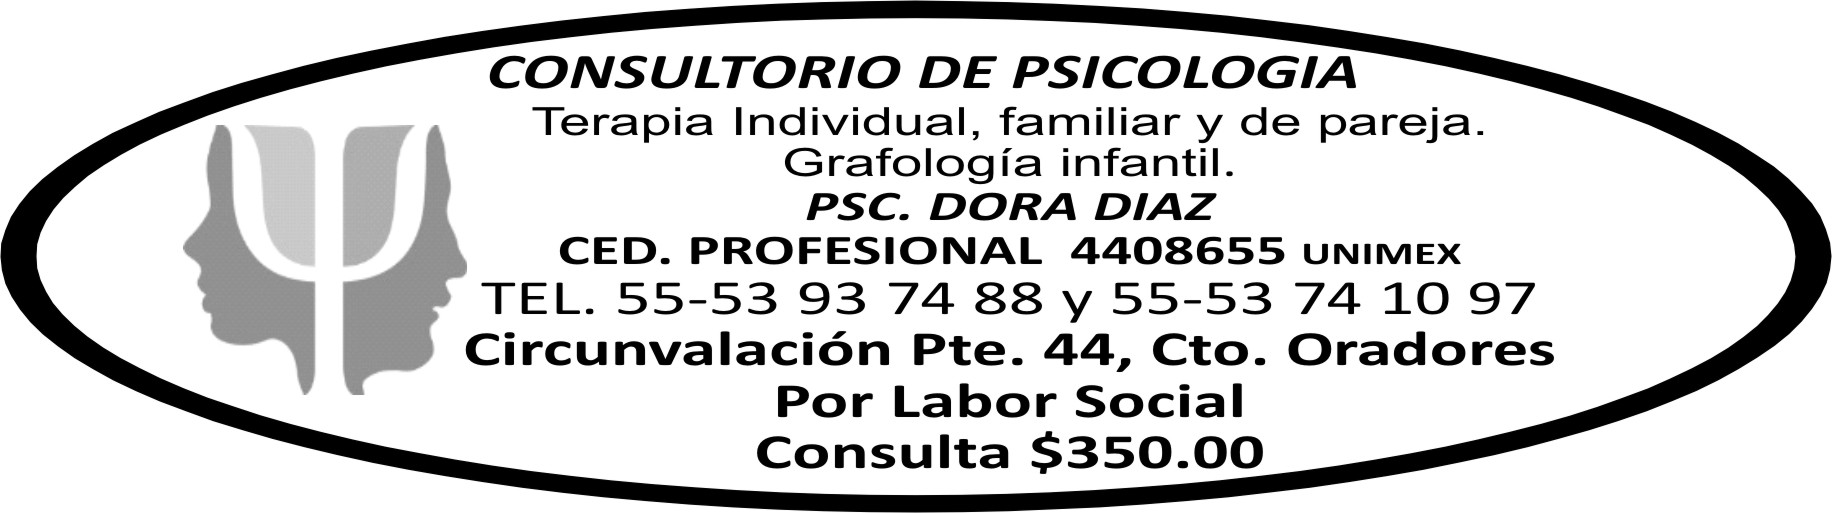 CONSULTORIO&NBSP;DE&NBSP;PSICOLOGIA $350 5393-7488
